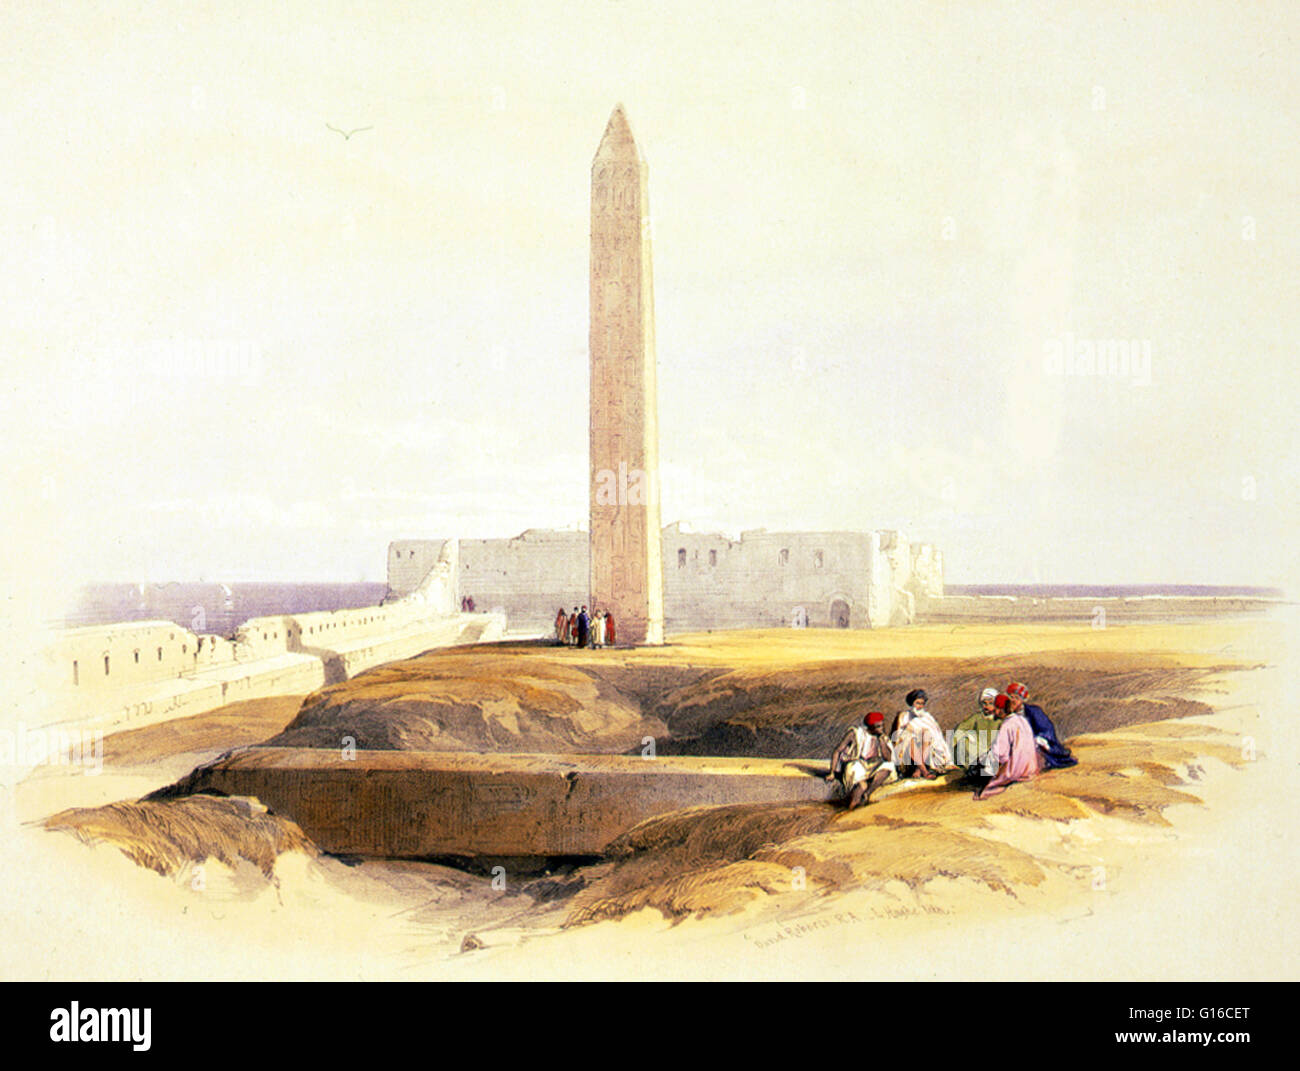 Unter dem Titel: "Obelisk in Alexandria gemeinhin als Kleopatras Nadel." Kleopatras Nadel ist der populäre Name für jede der drei antiken ägyptischen Obelisken in London, Paris und New York City während des 19. Jahrhunderts wieder aufgebaut. Alle drei Nadeln sind echt Stockfoto